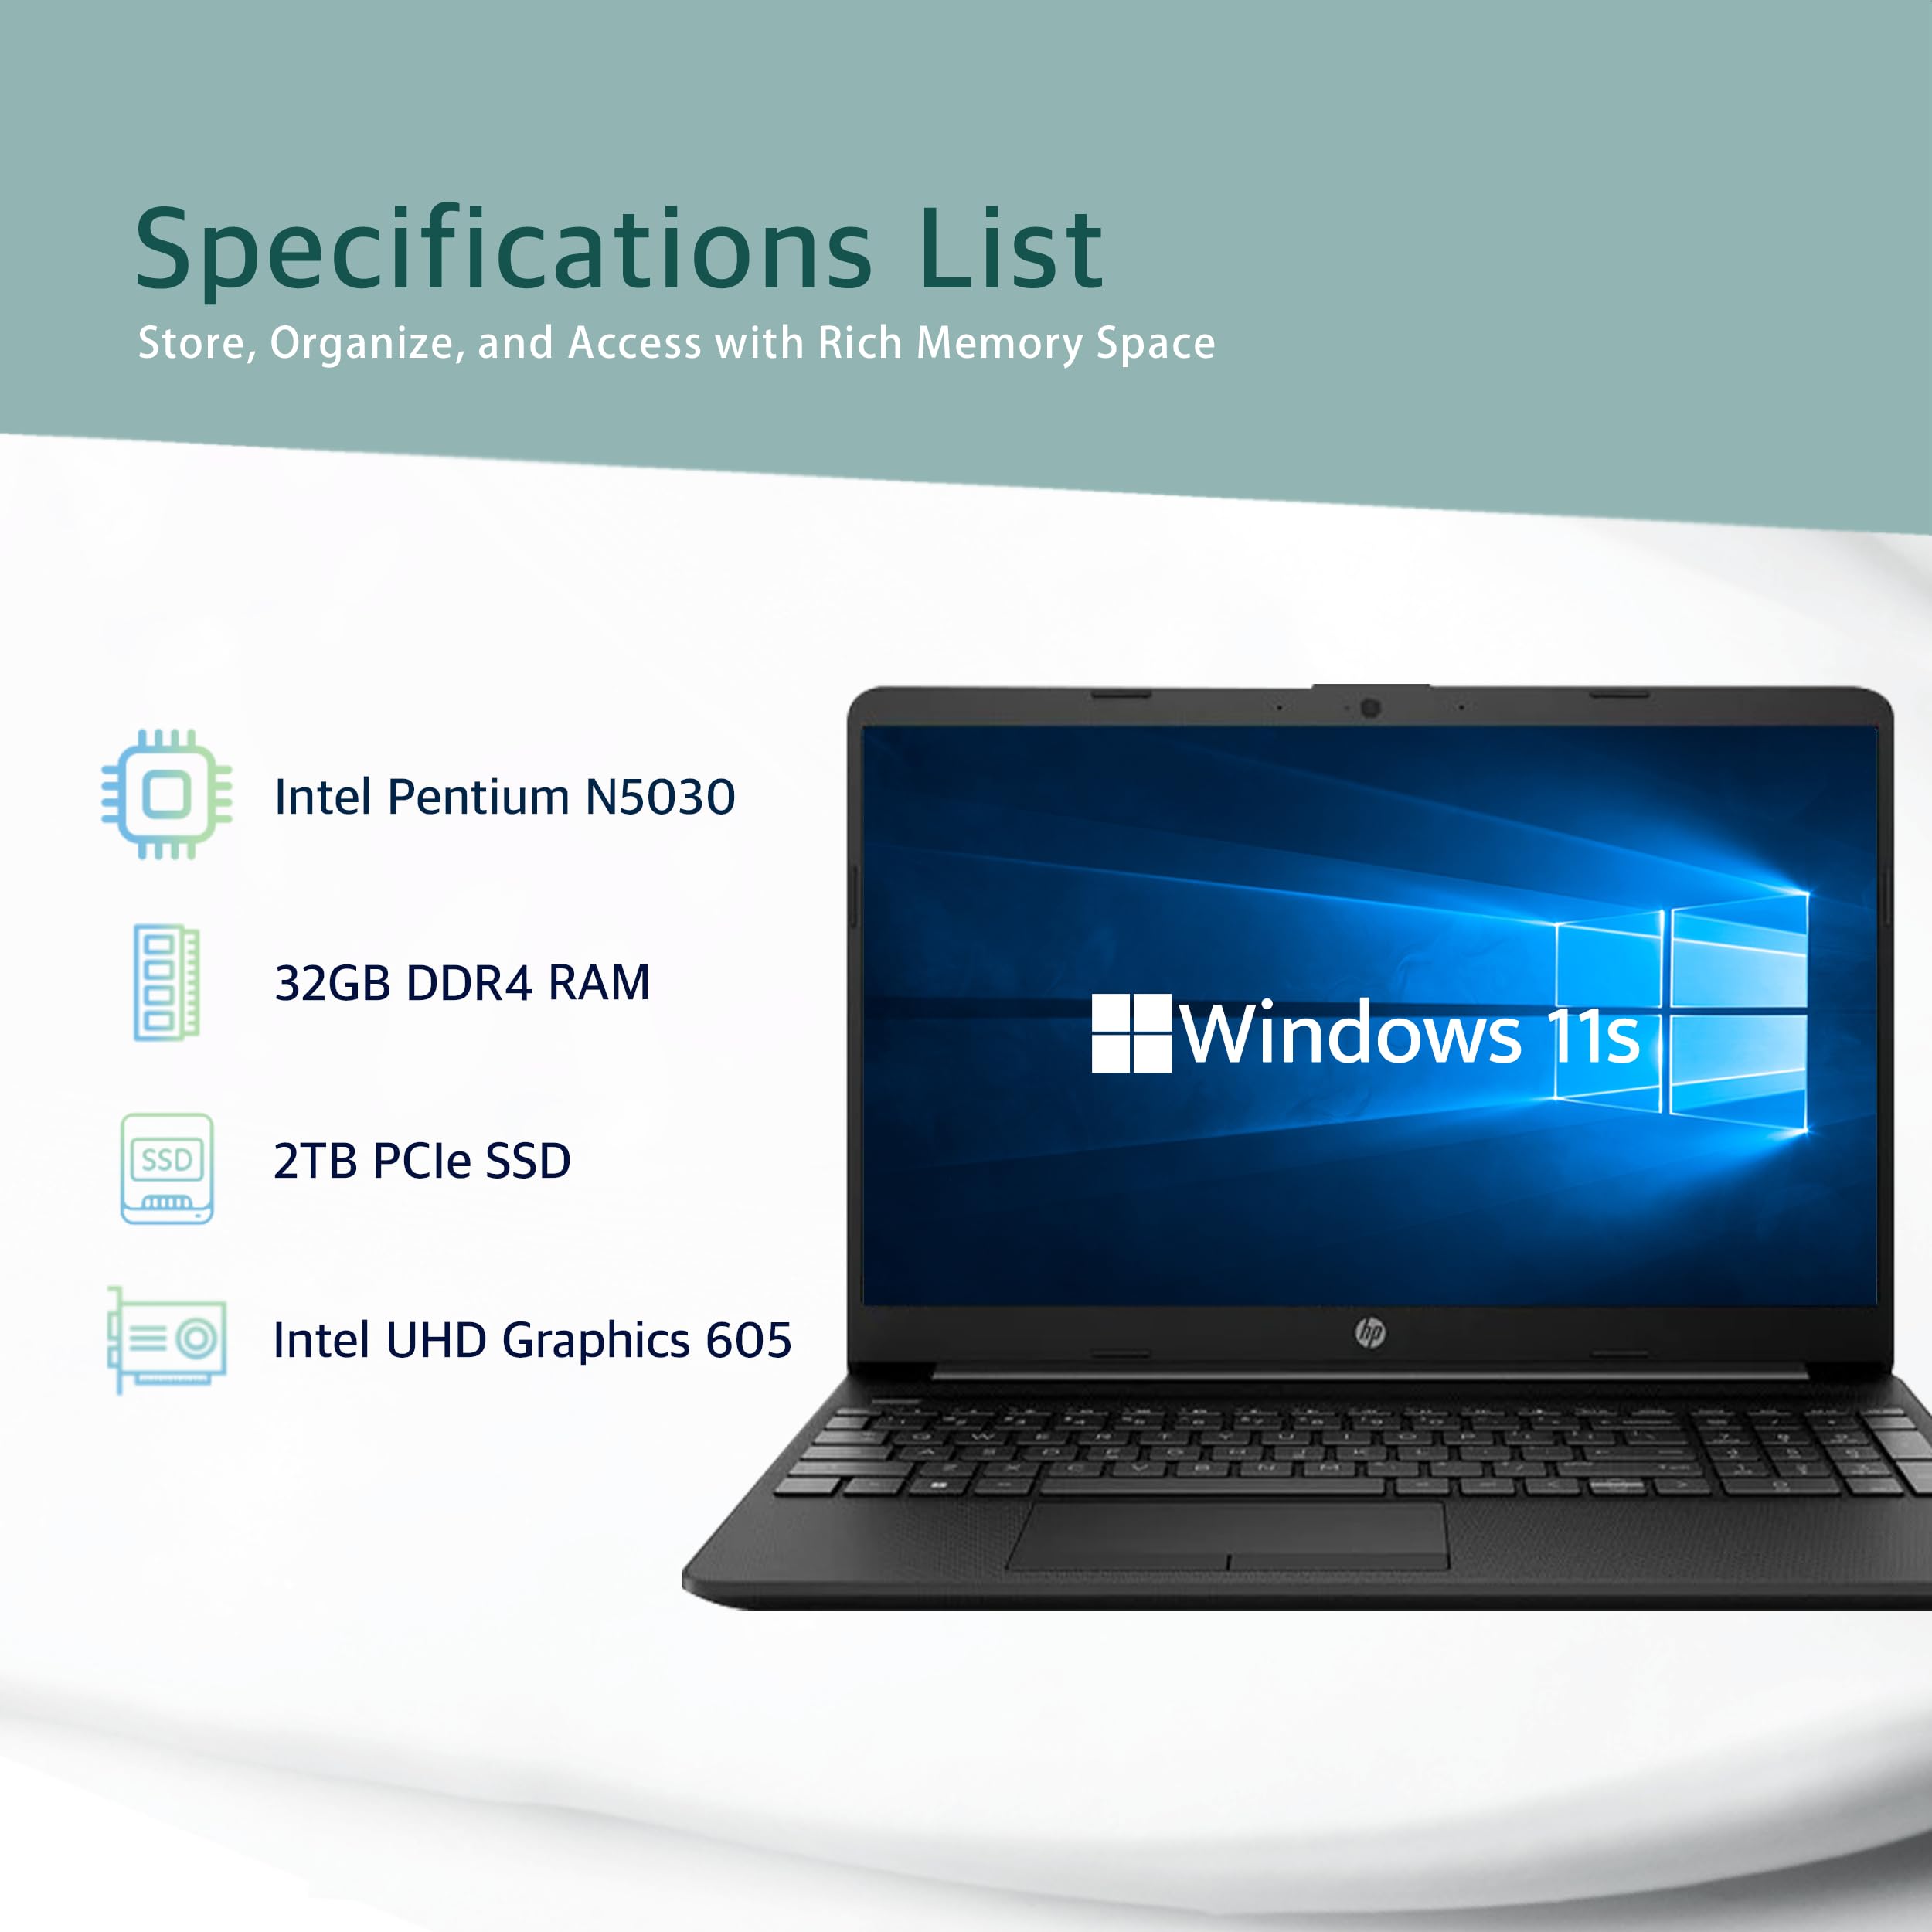 HP 15.6” HD Student Laptop, Intel Pentium Silver N5030, 32GB RAM, 2TB PCIe SSD, Intel UHD Graphics, HD Webcam, Numpad, Wi-Fi 5, Bluetooth, Windows 11, Black, 32GB USB Card